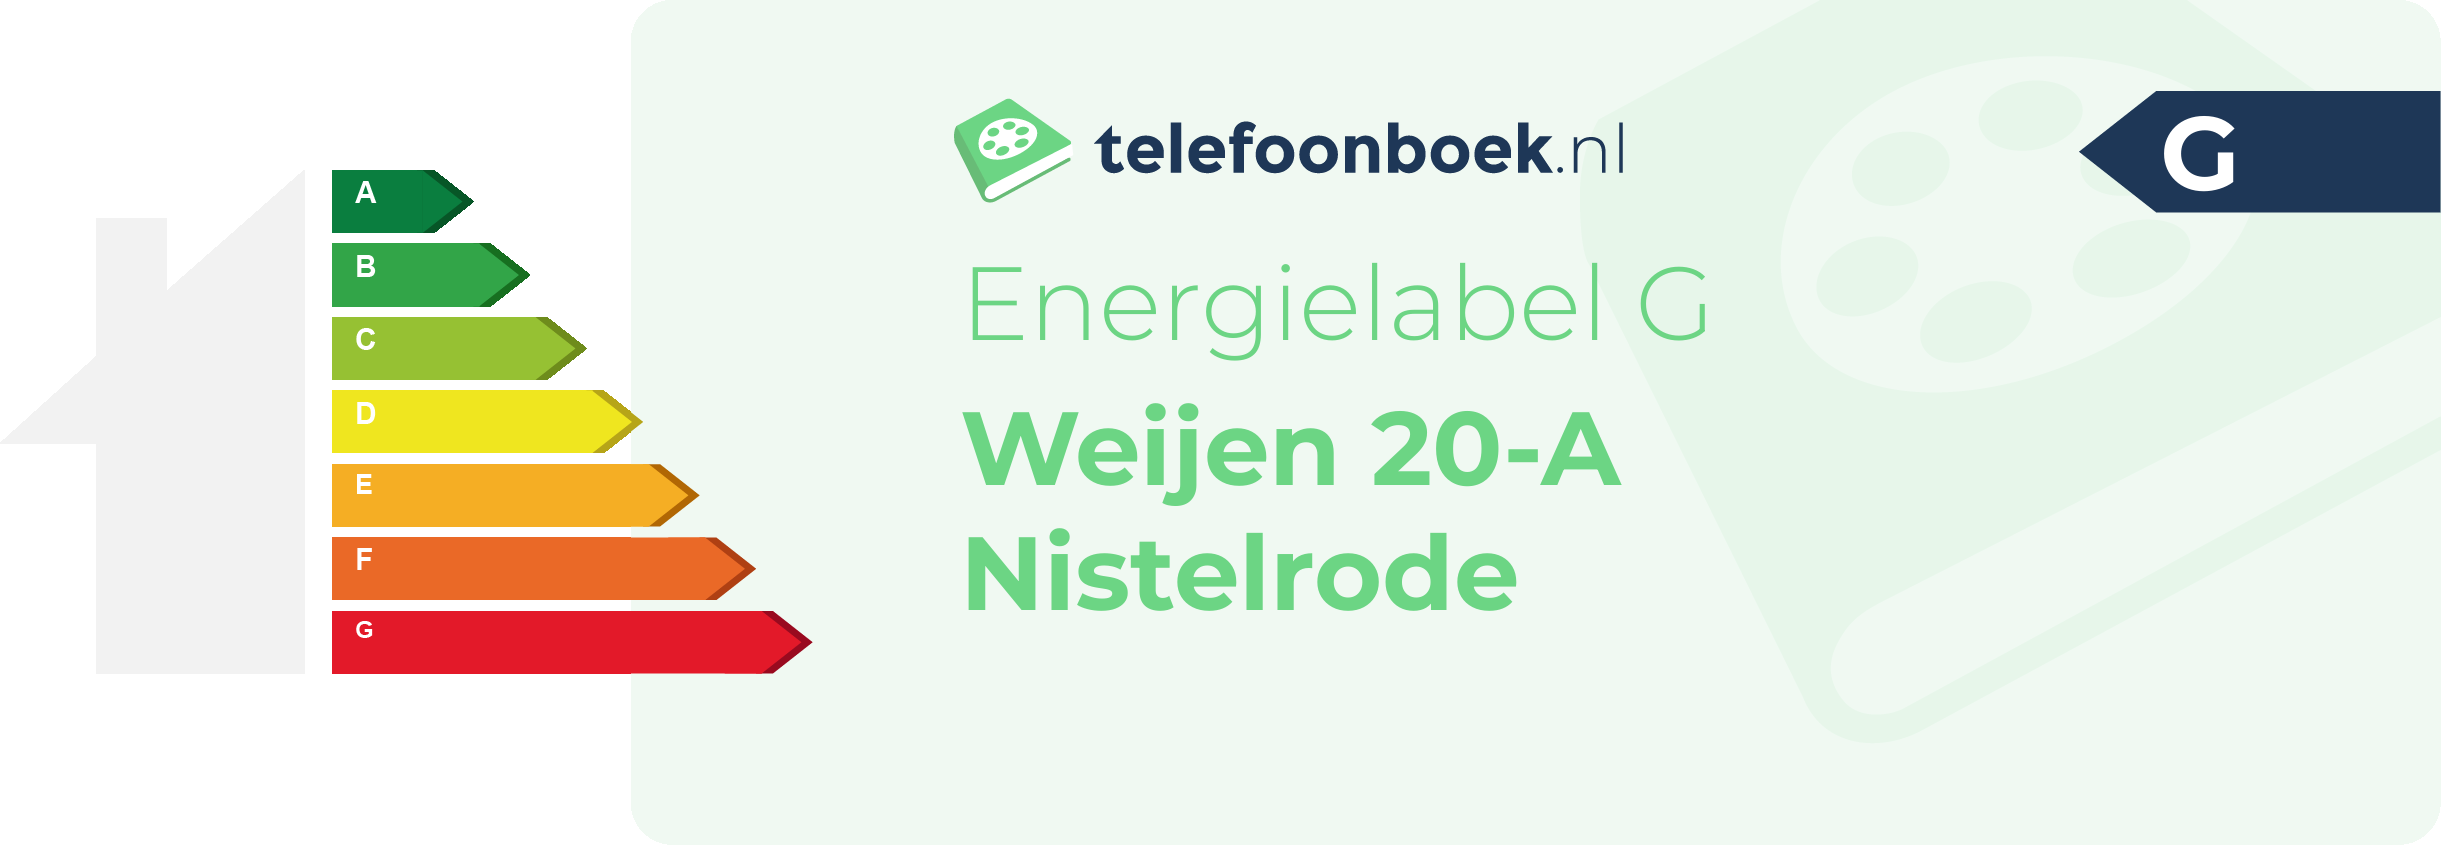 Energielabel Weijen 20-A Nistelrode